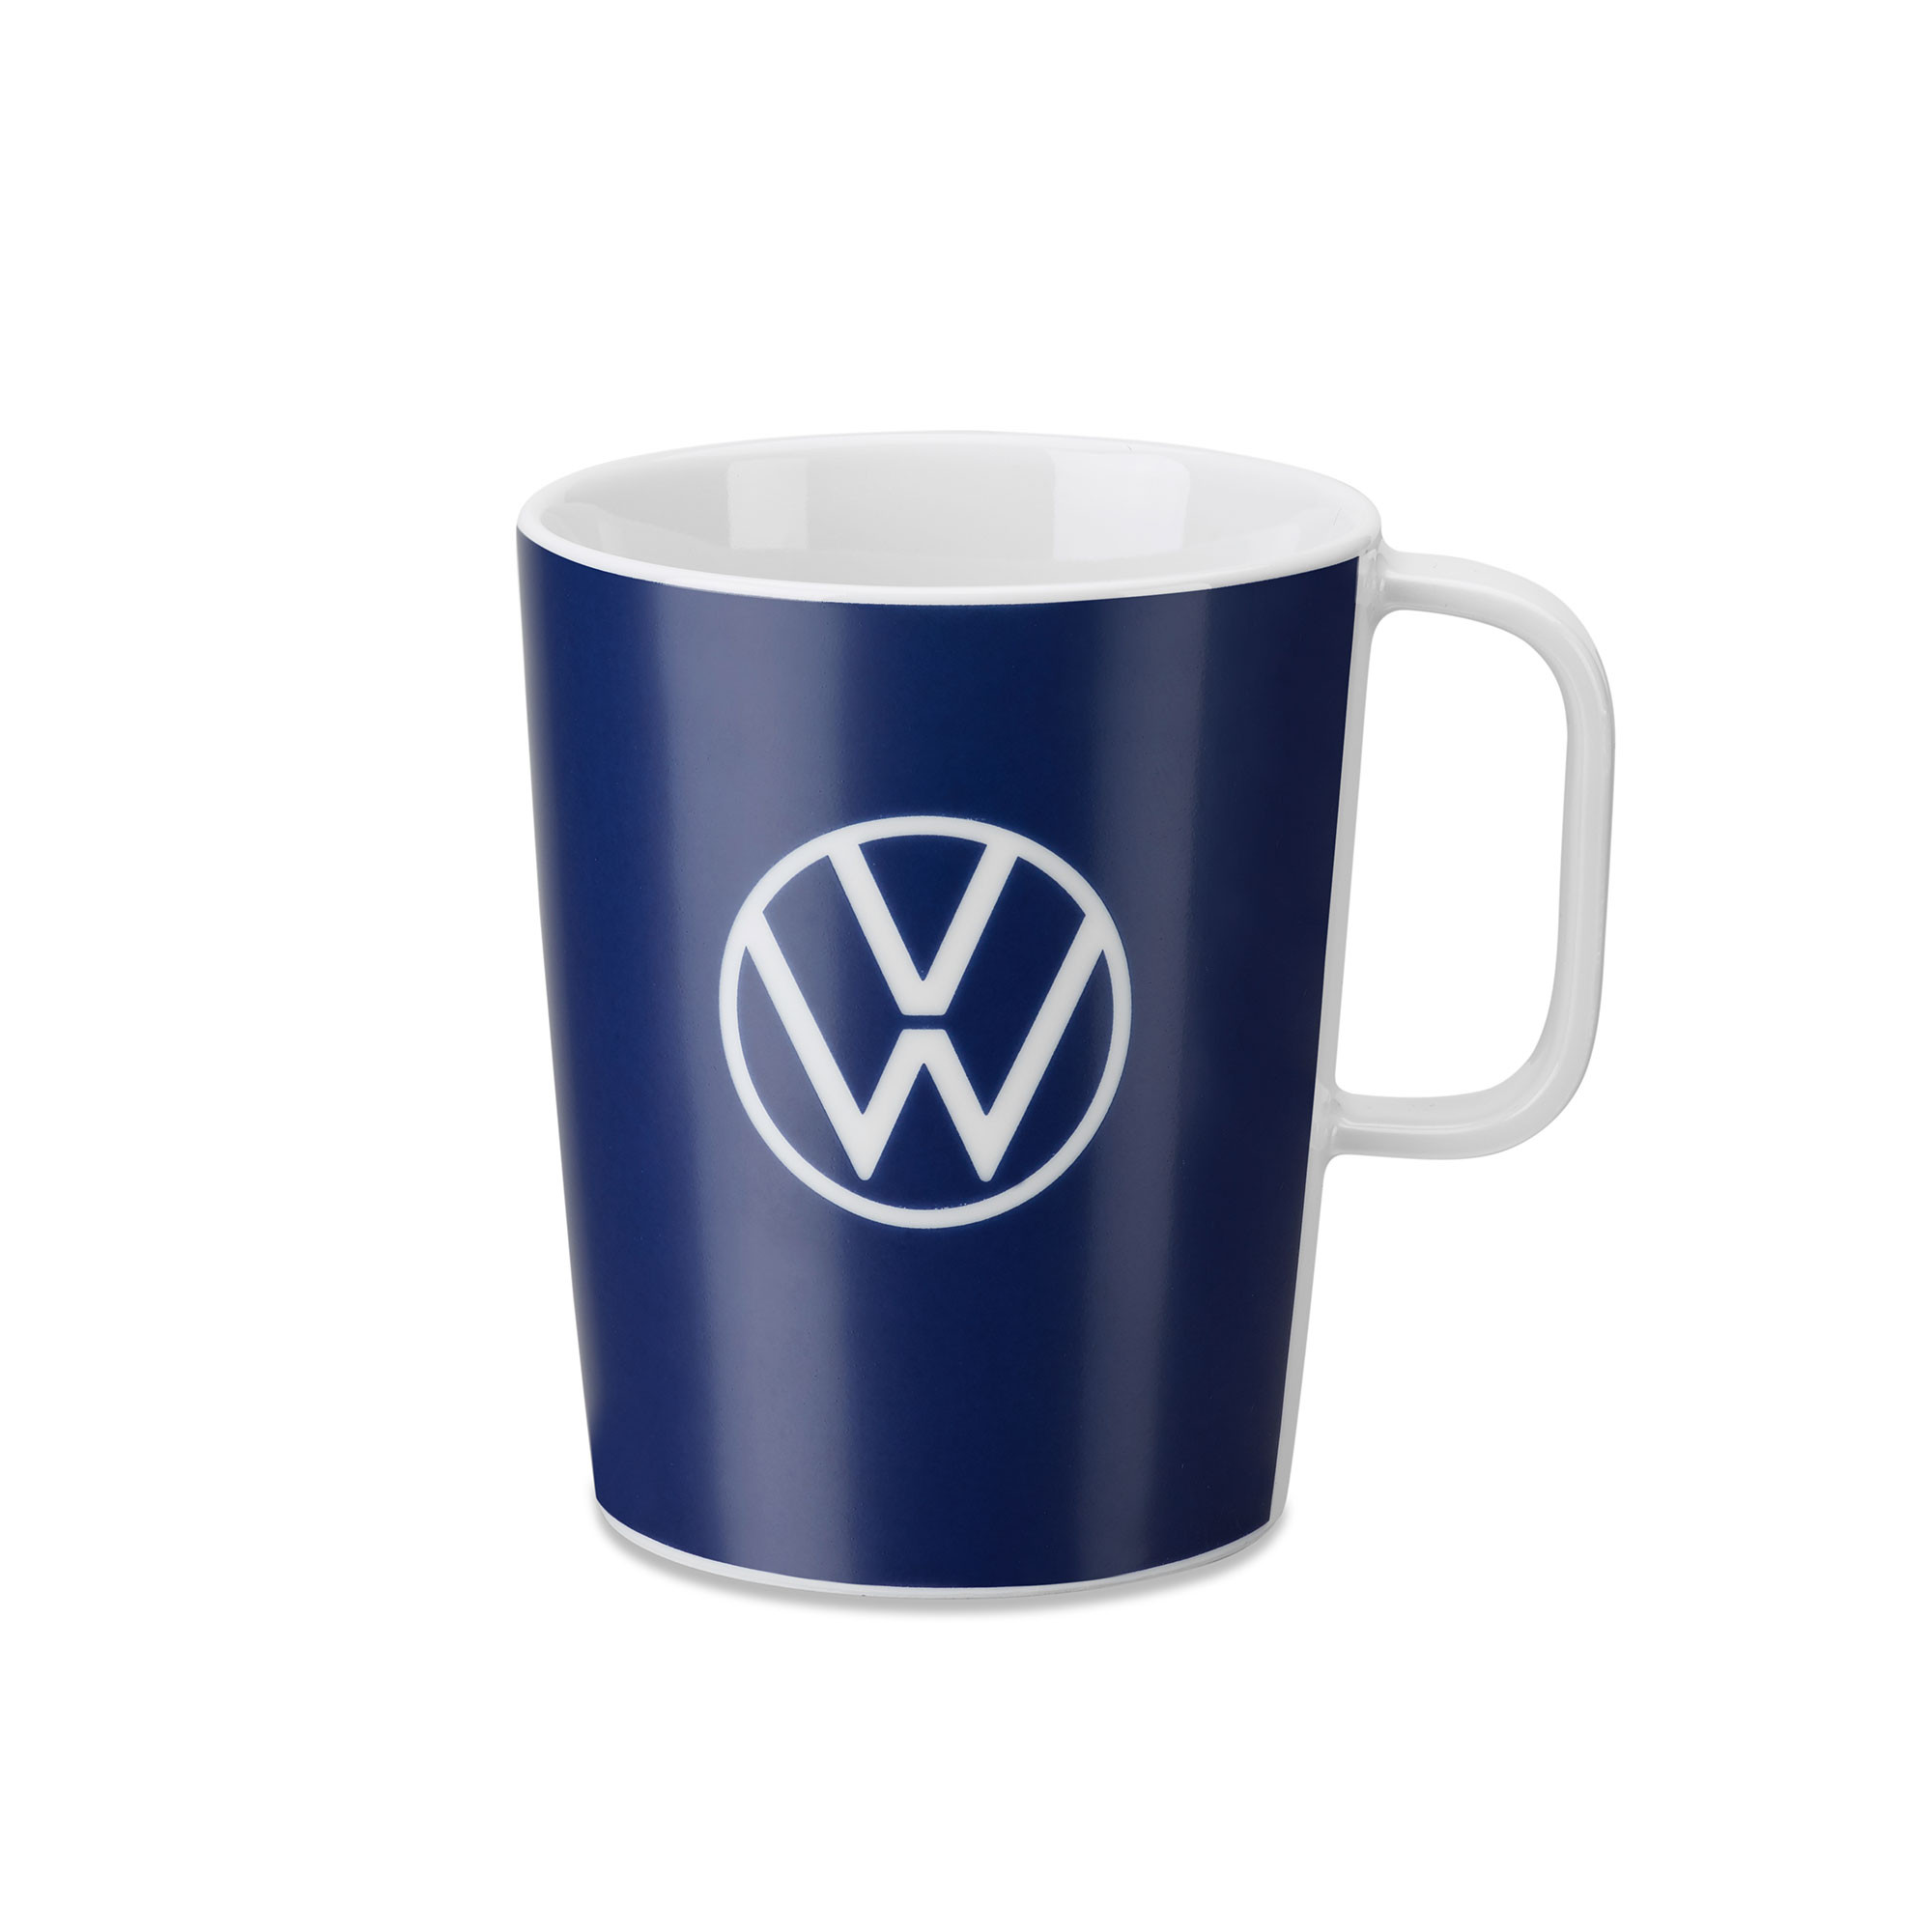 VW Tasse Kaffeetasse Becher Mug Cup Porzellan Original Volkswagen